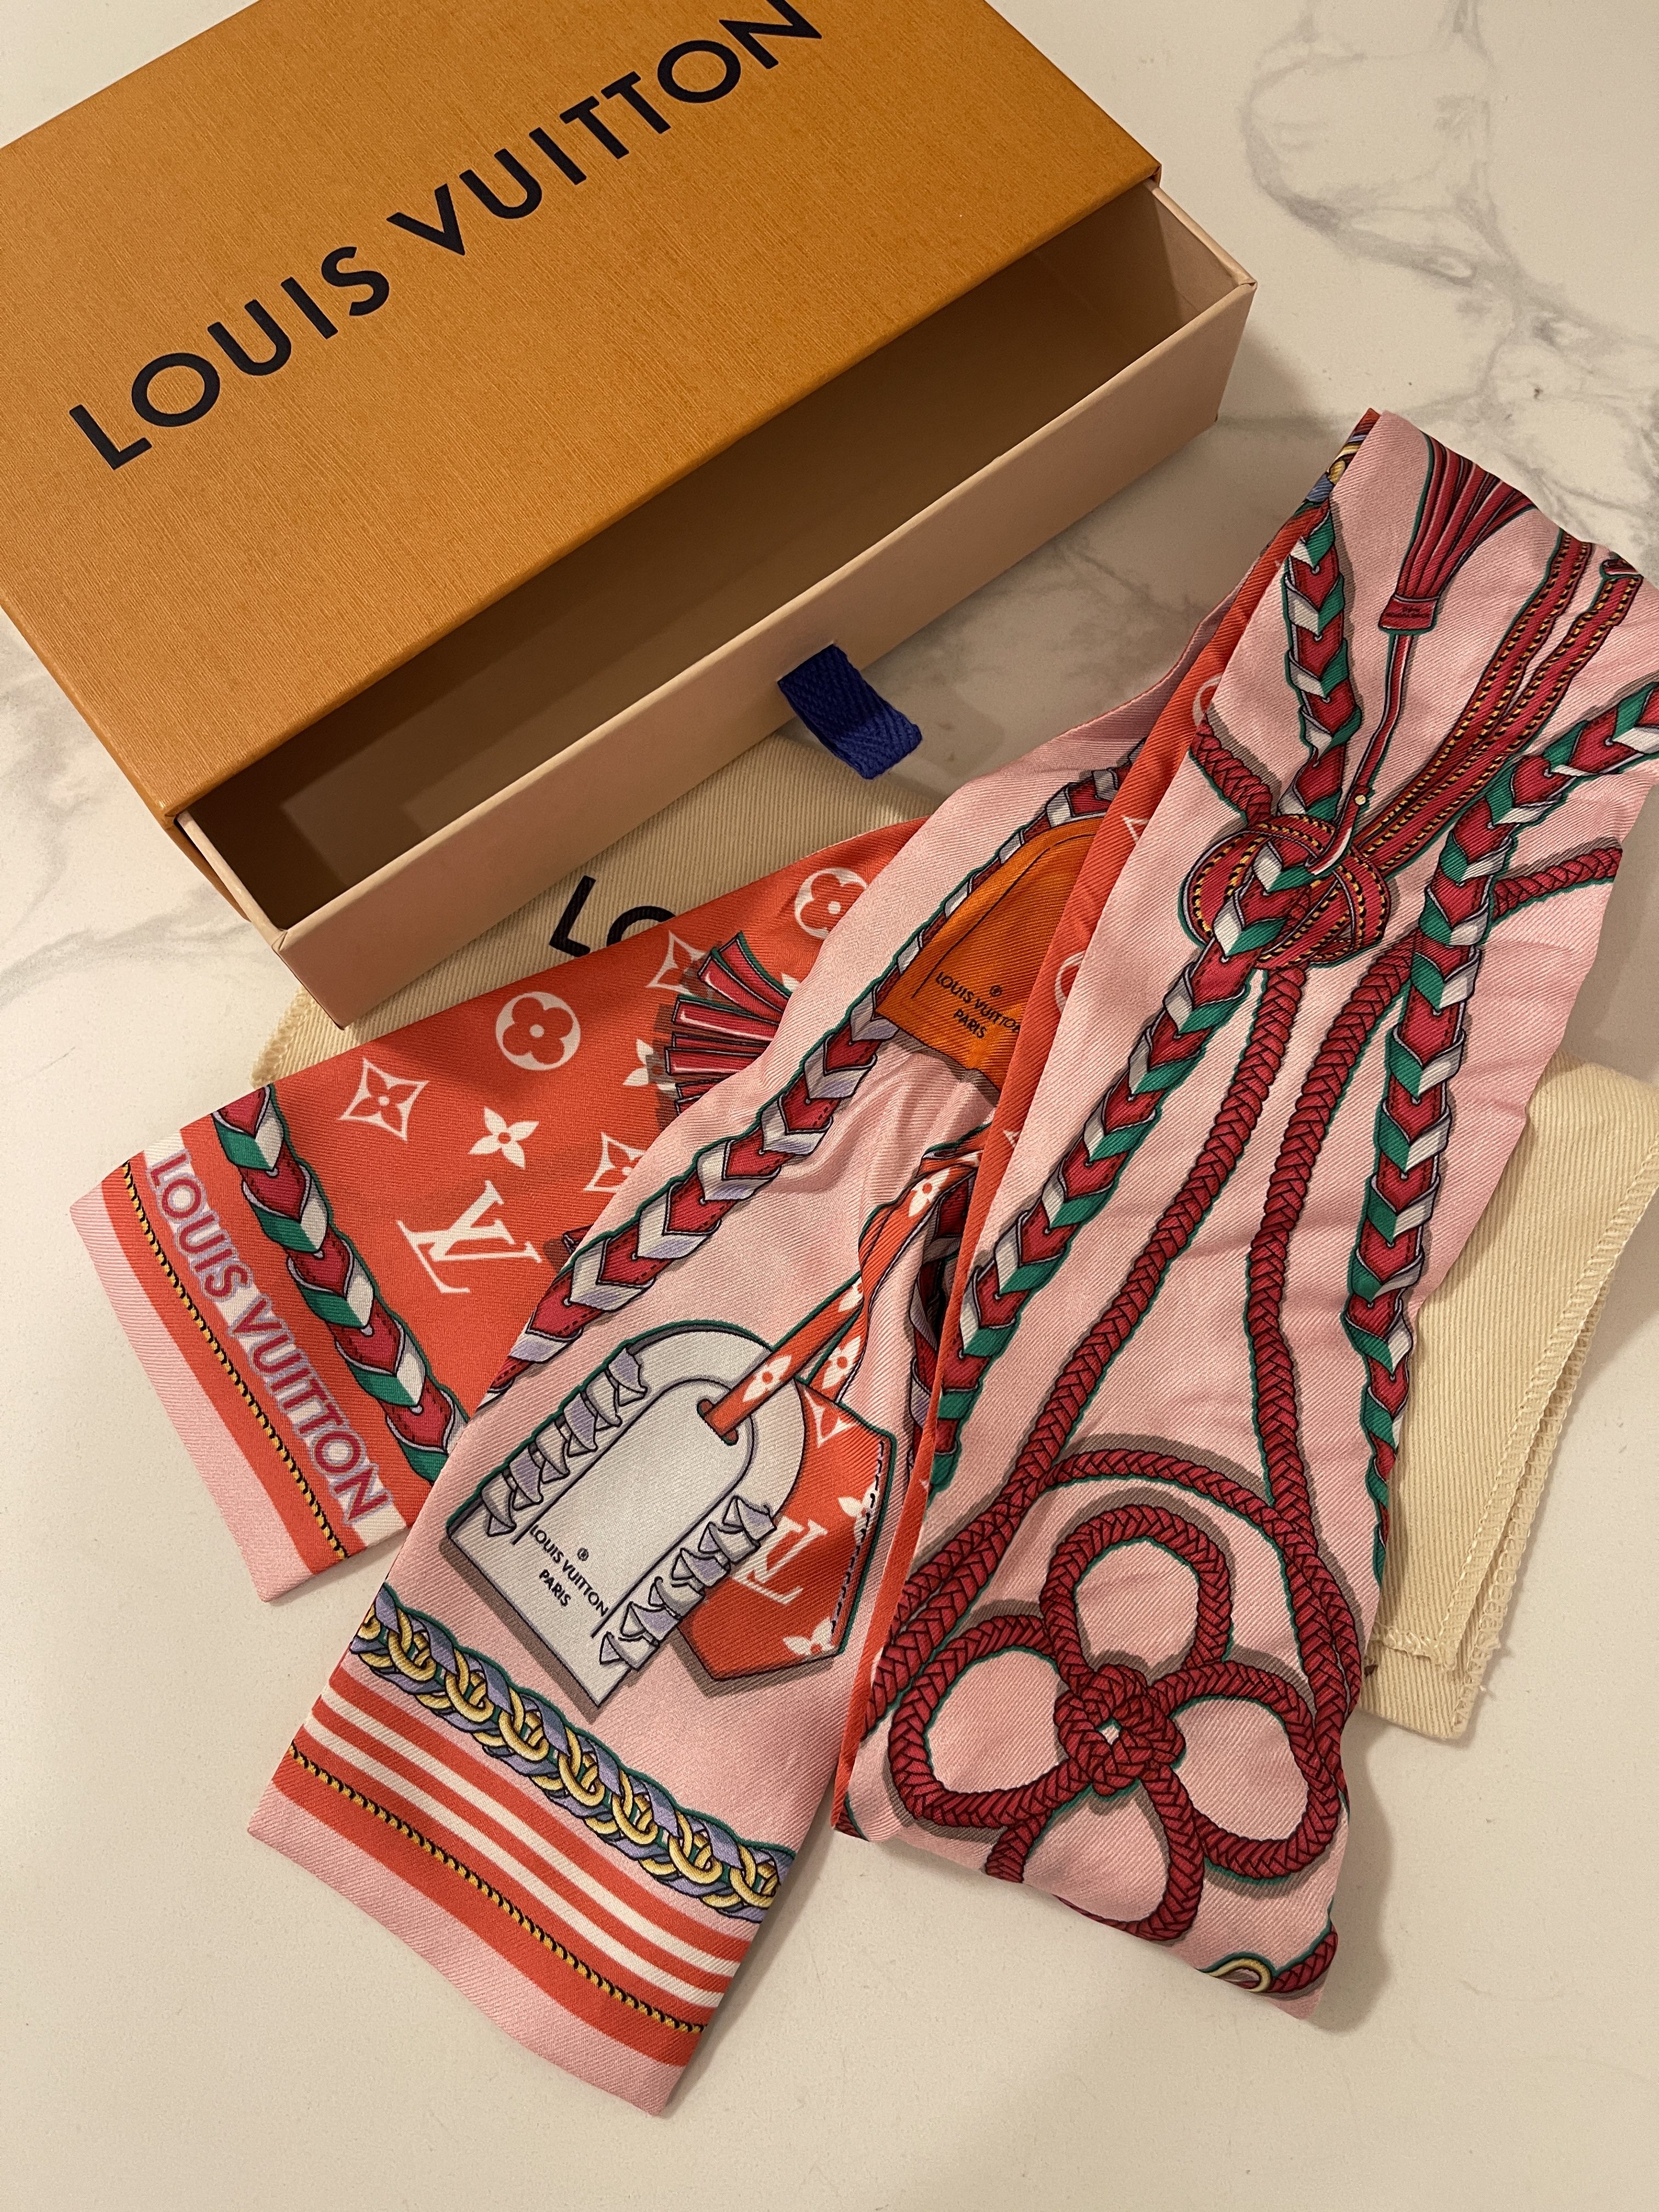 Louis Vuitton Bandeau for sale